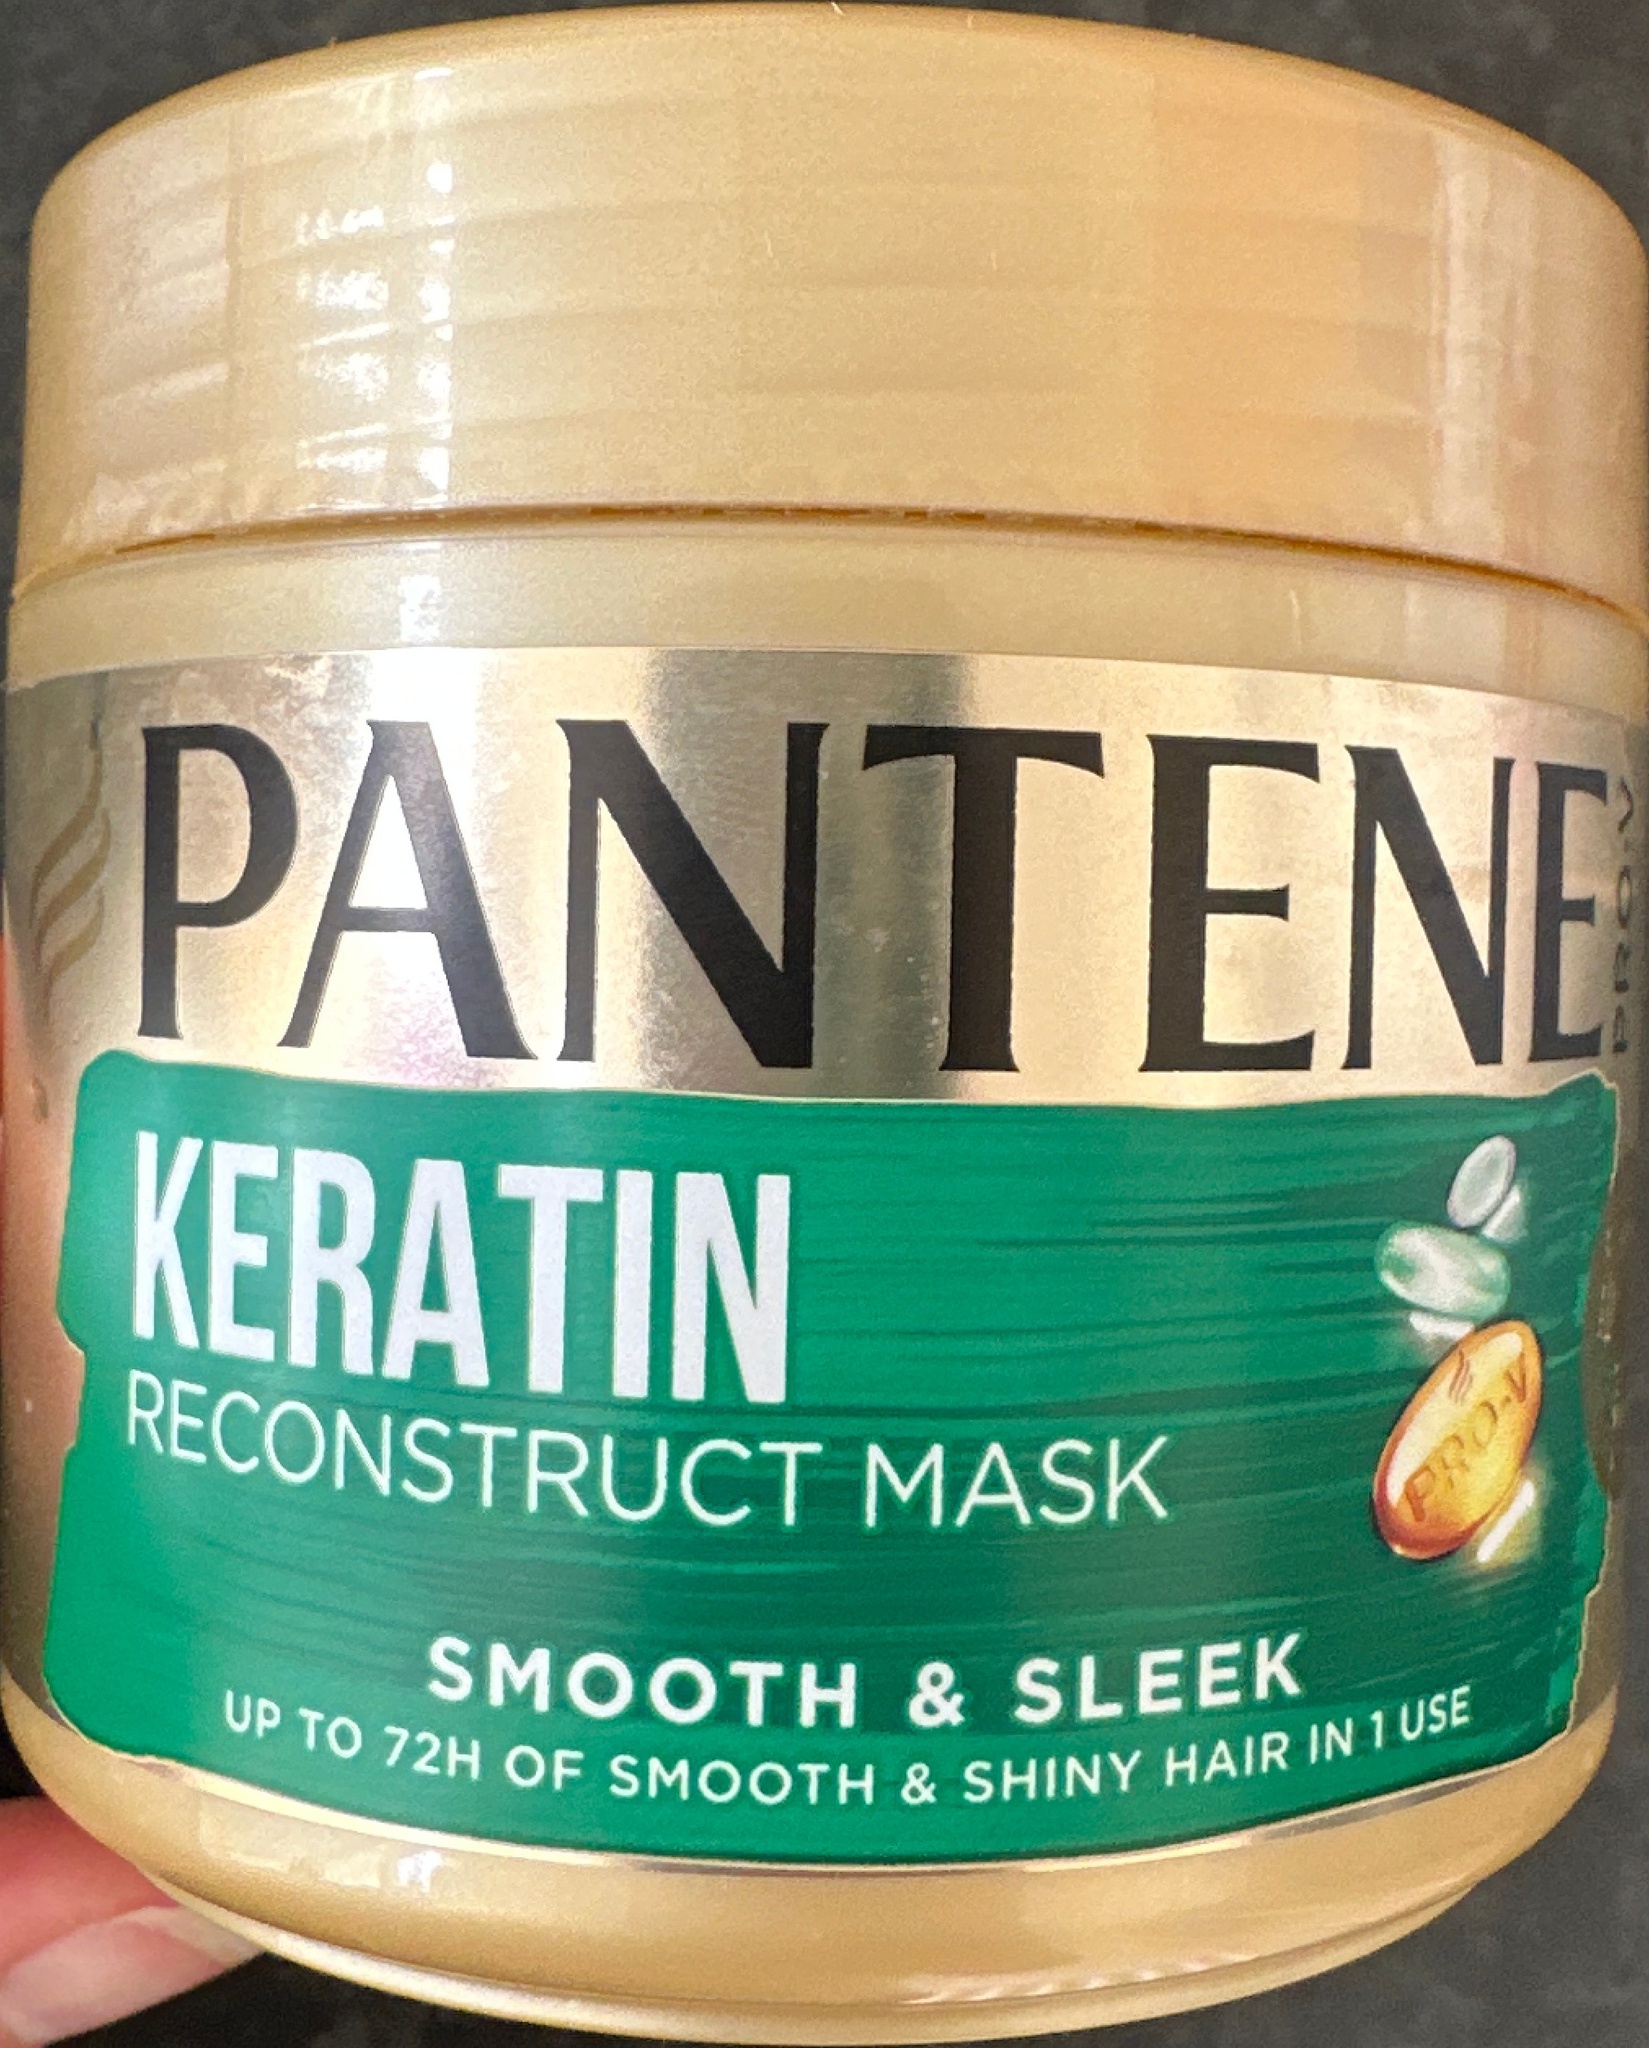 Pantene Pro-V Keratin Reconstruct Mask